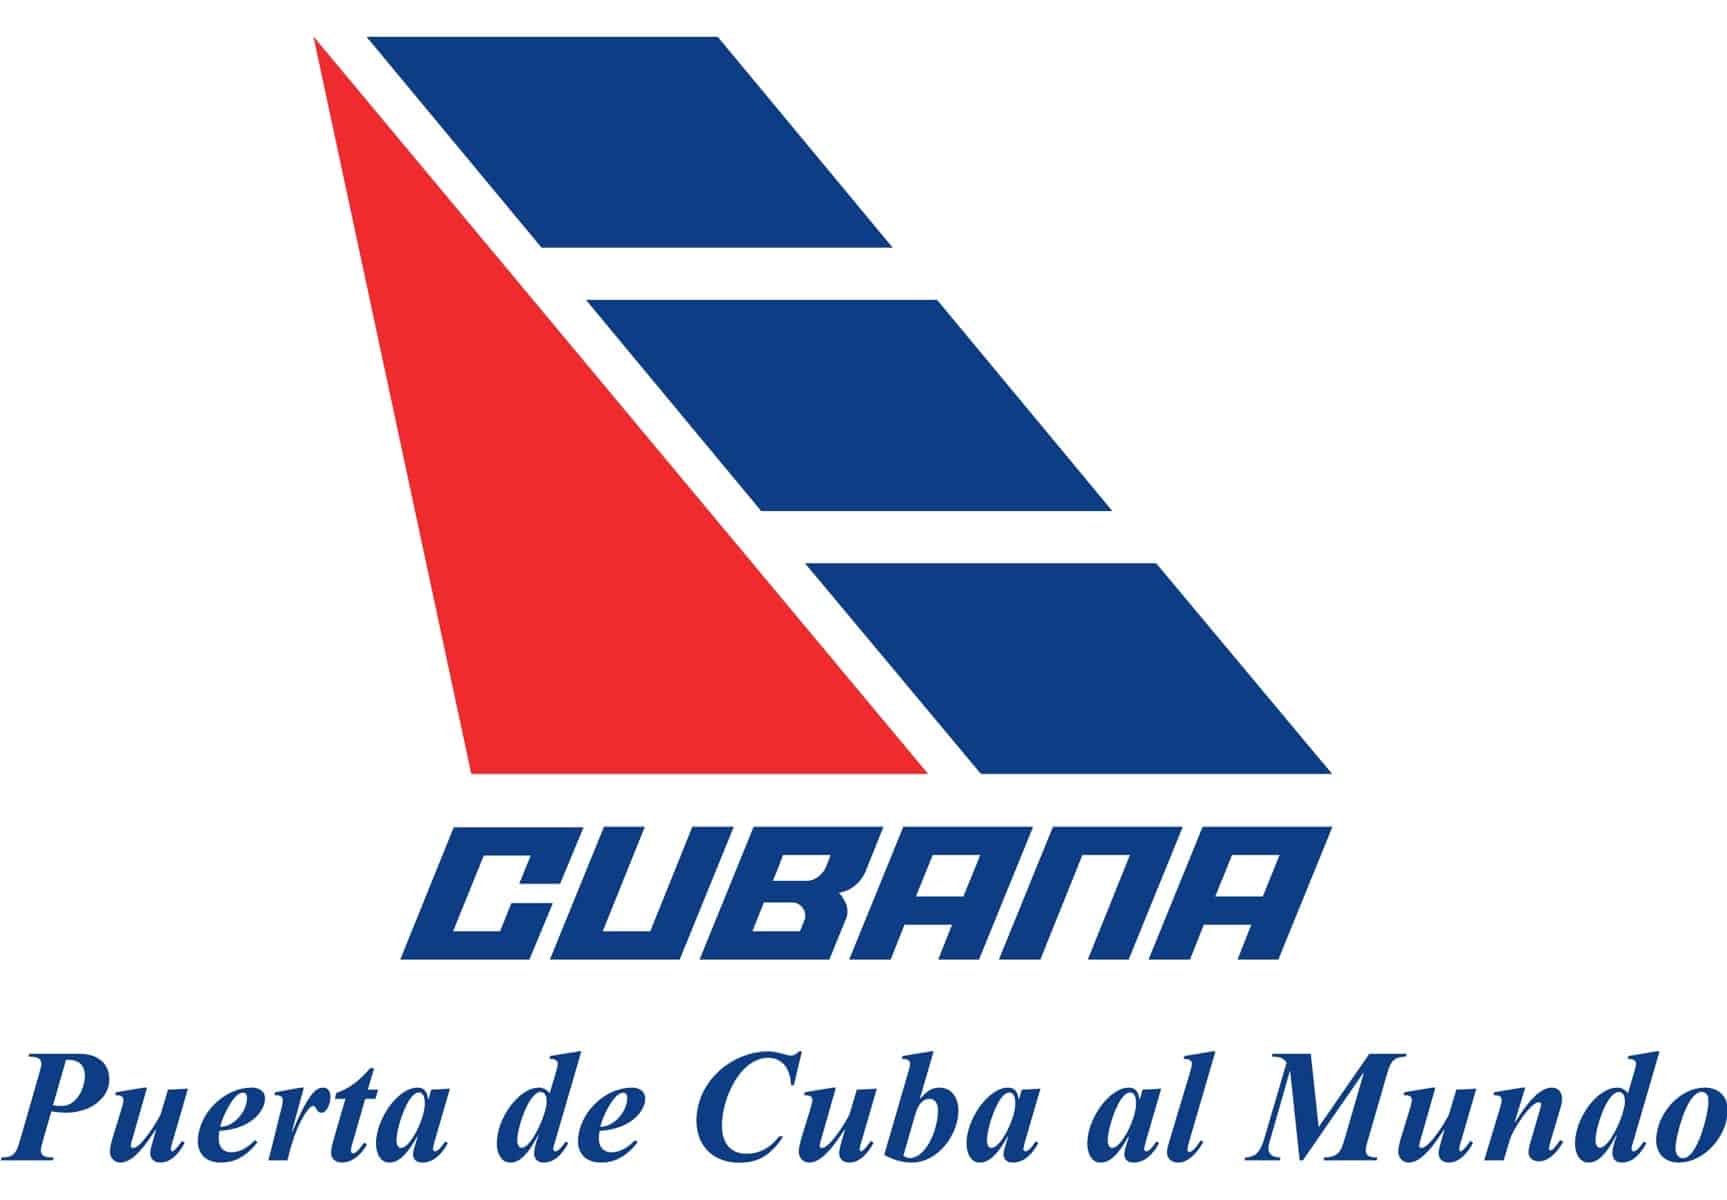 Cubana de Aviacion Reestablece Vuelos Interprovinciales